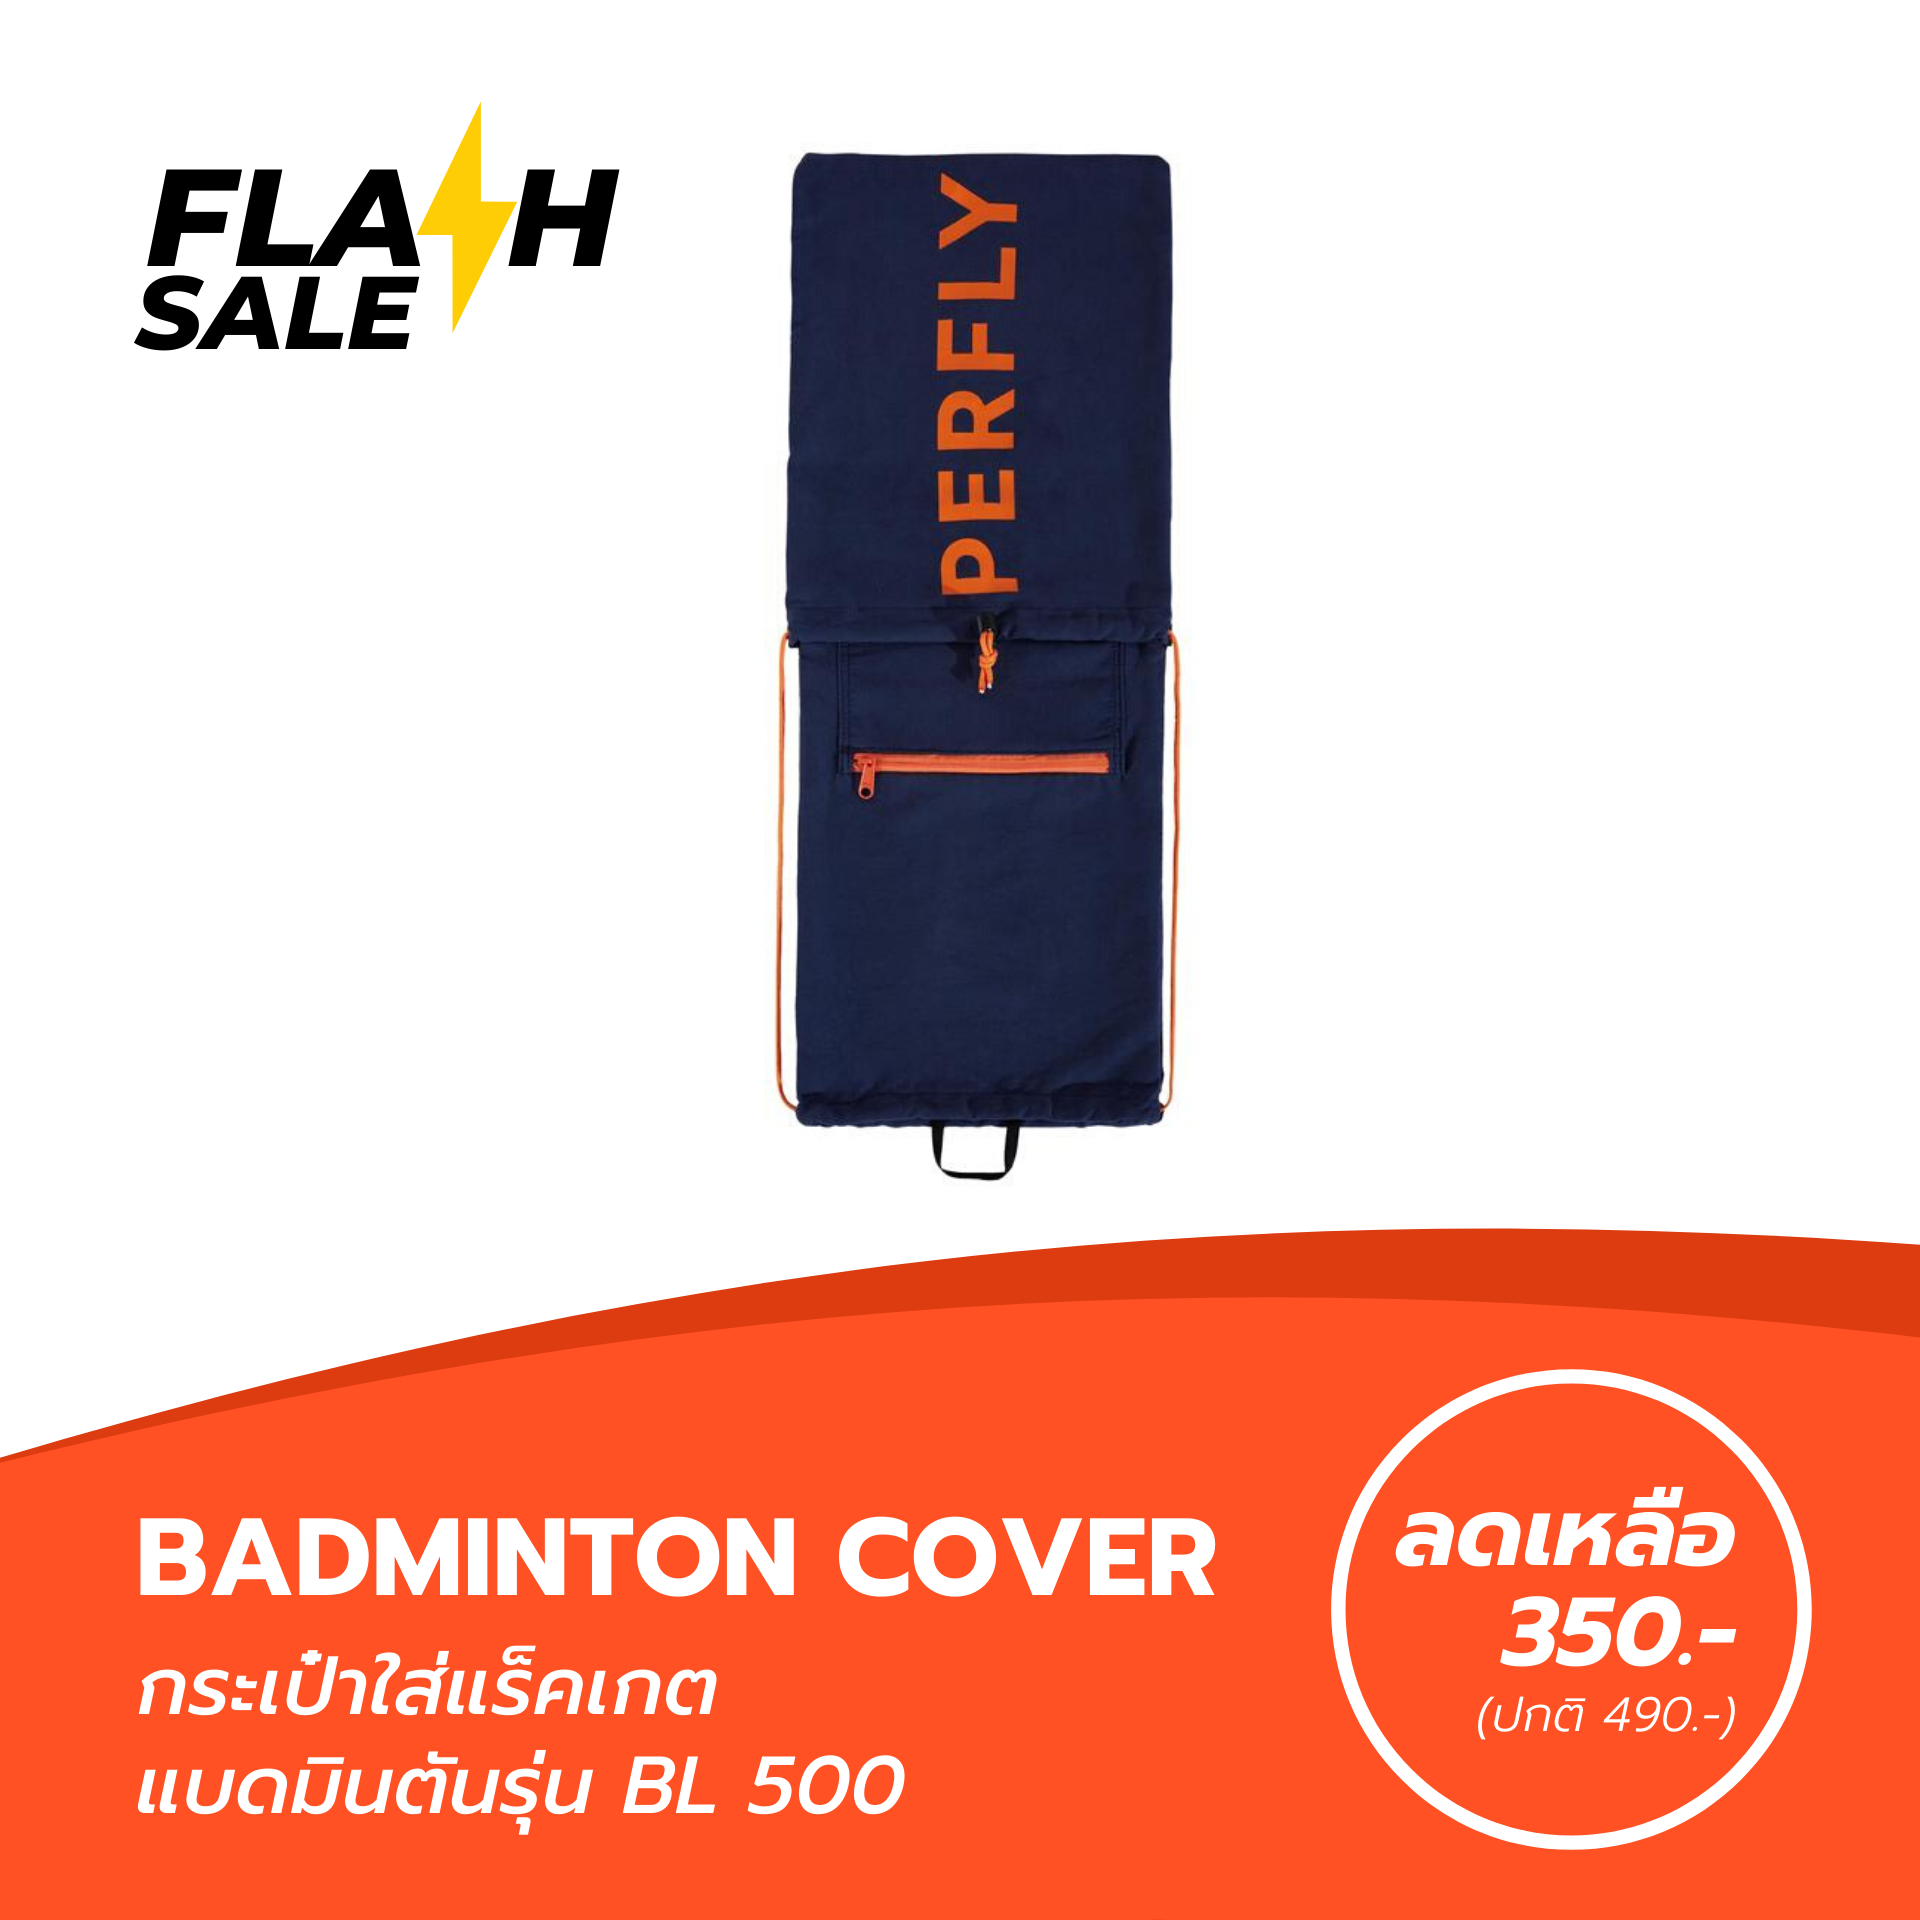 กระเป๋าแบดมินตัน กระเป๋าใส่แร็คเกตแบดมินตันรุ่น BL 500 ช่องสำหรับใส่แร็คเกต 2 ช่อง และช่องสำหรับใส่รองเท้า 1 ช่อง BADMINTON COVER BL 500 MODEL